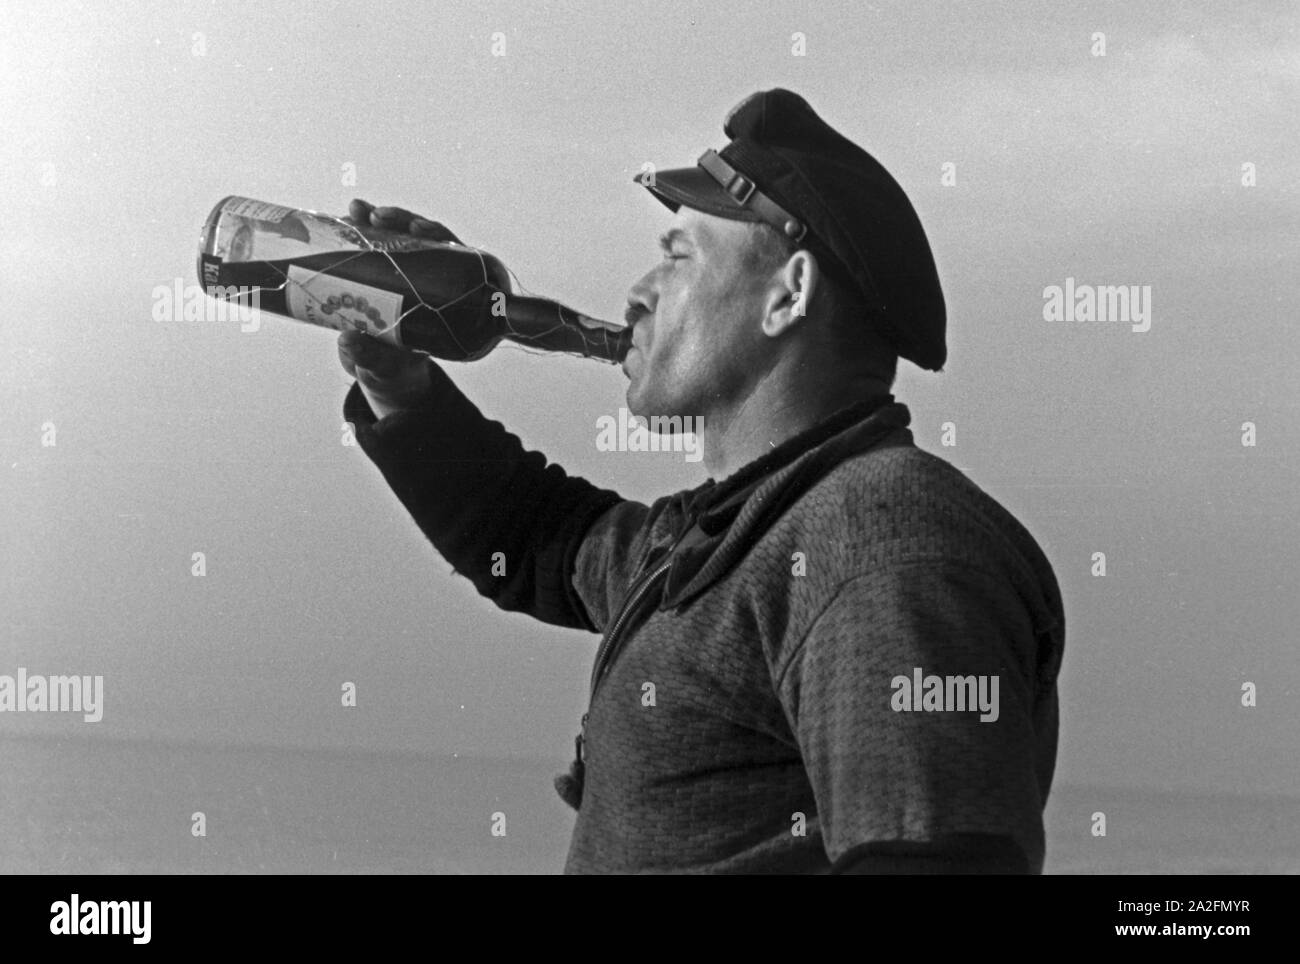 Hochseefischer nimmt ein einen Schluck Rum aus der Flasche, Deutschland 1930 er Jahre. Un pêcheur en haute mer en prenant un coup de rhum, Allemagne 1930. Banque D'Images